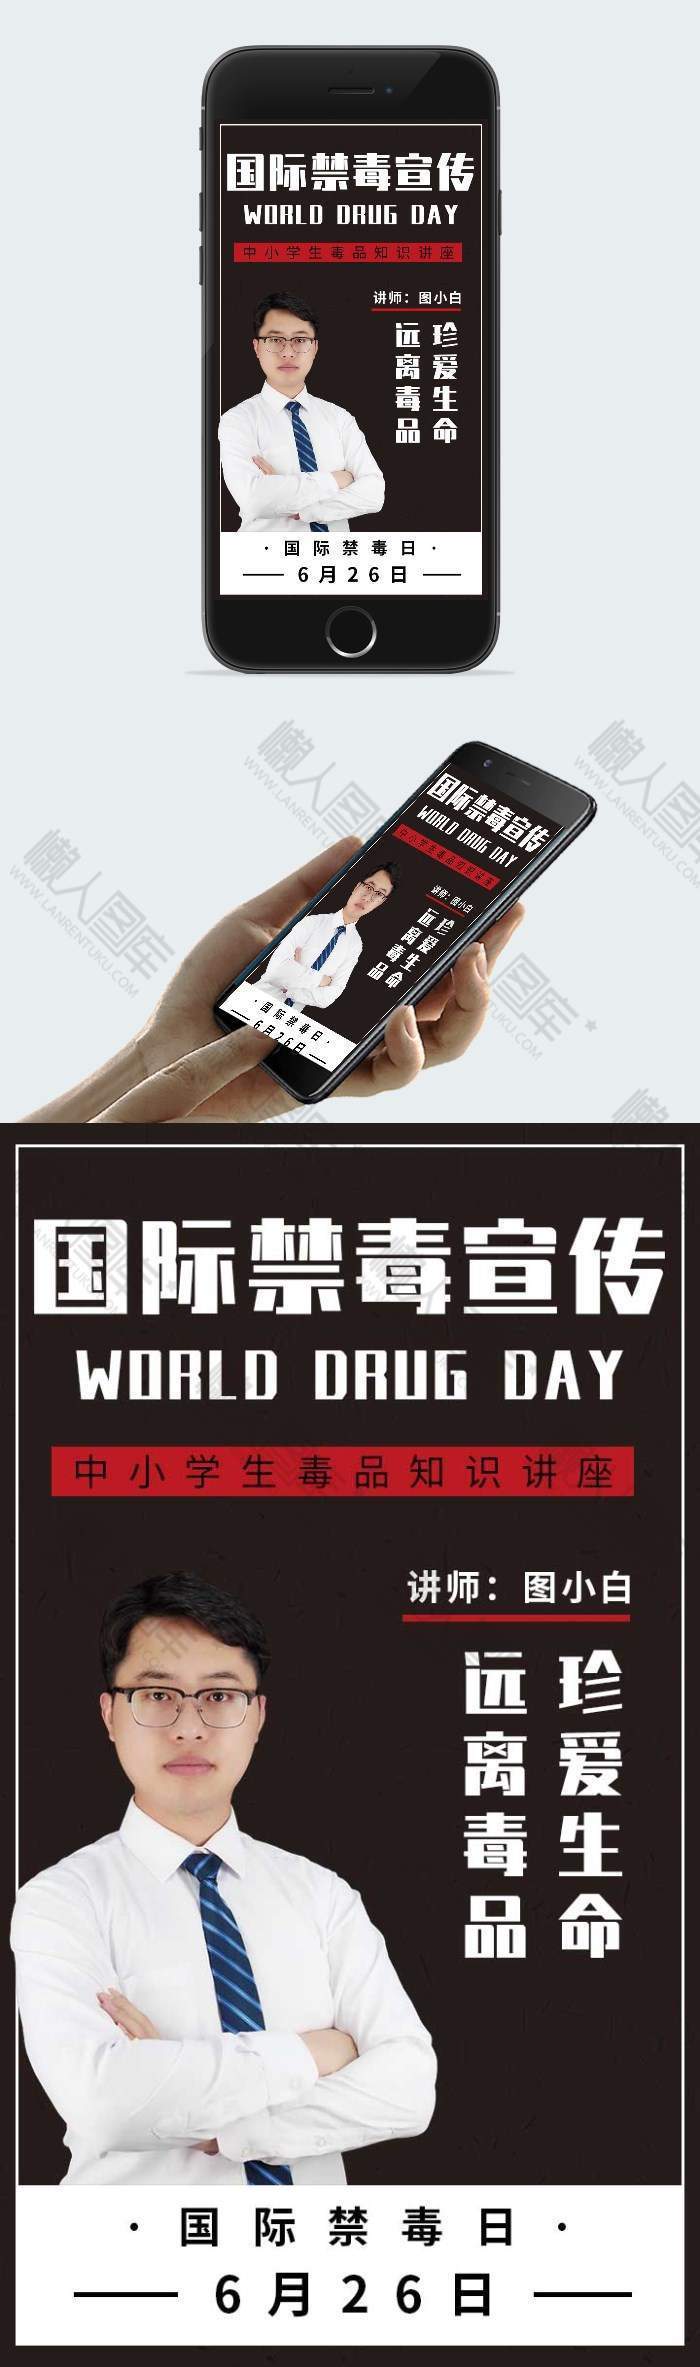 毒品知识点普及宣传讲座节日设计海报